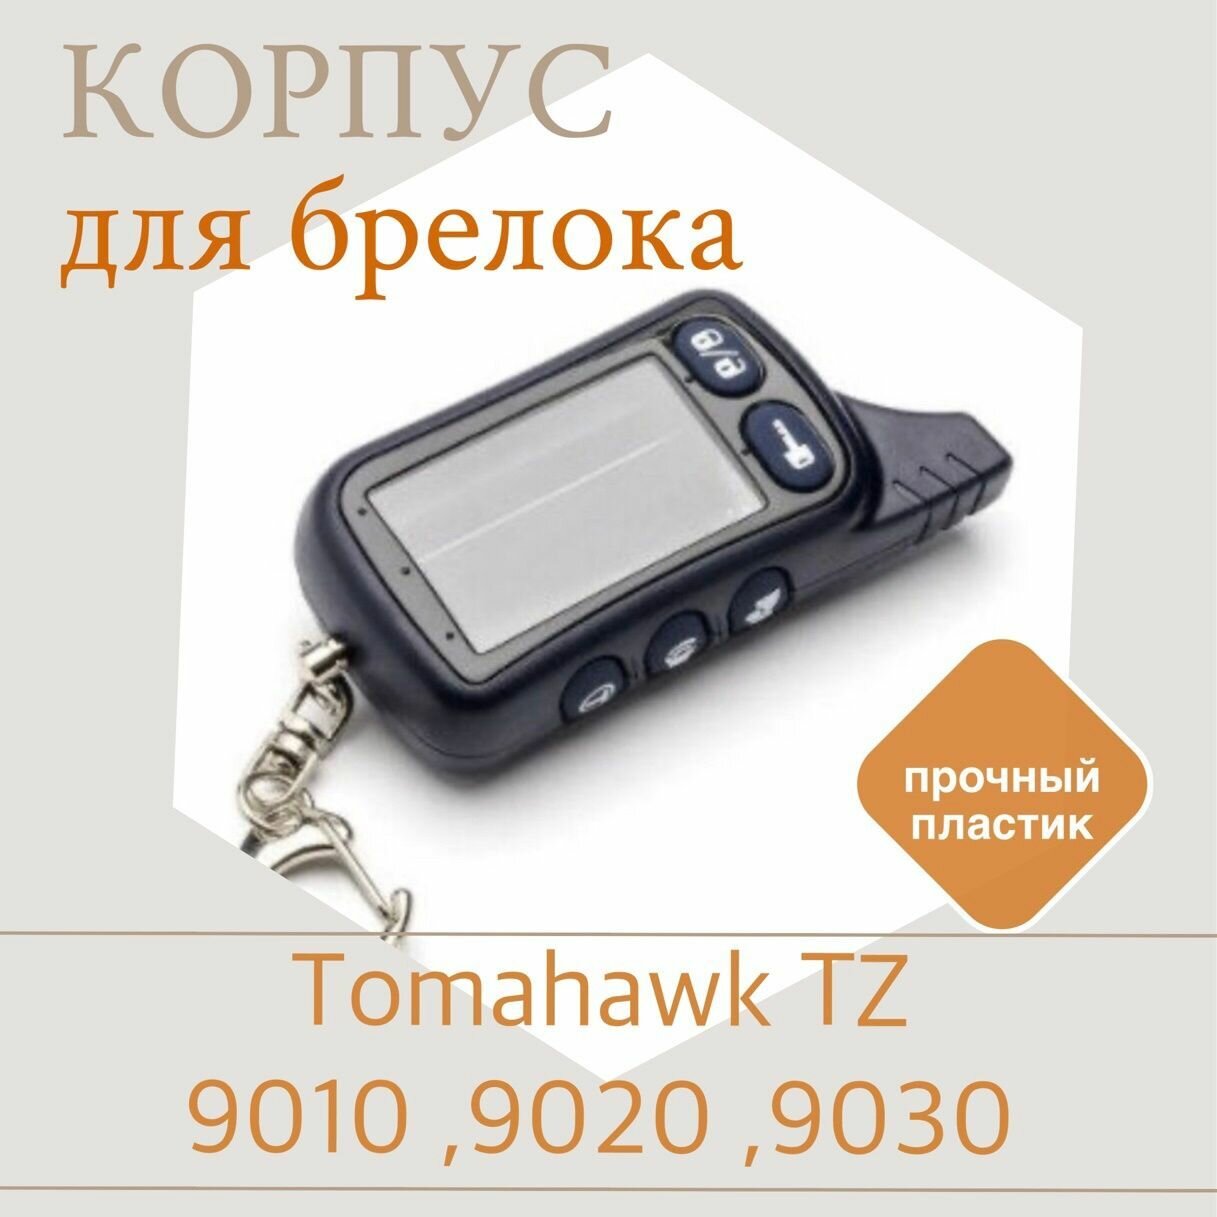 Корпус брелока Томагавк ТZ 9010 ,9020 ,9030 / Пульт сигнализации Tomahawk TZ9010 ,9020 ,9030